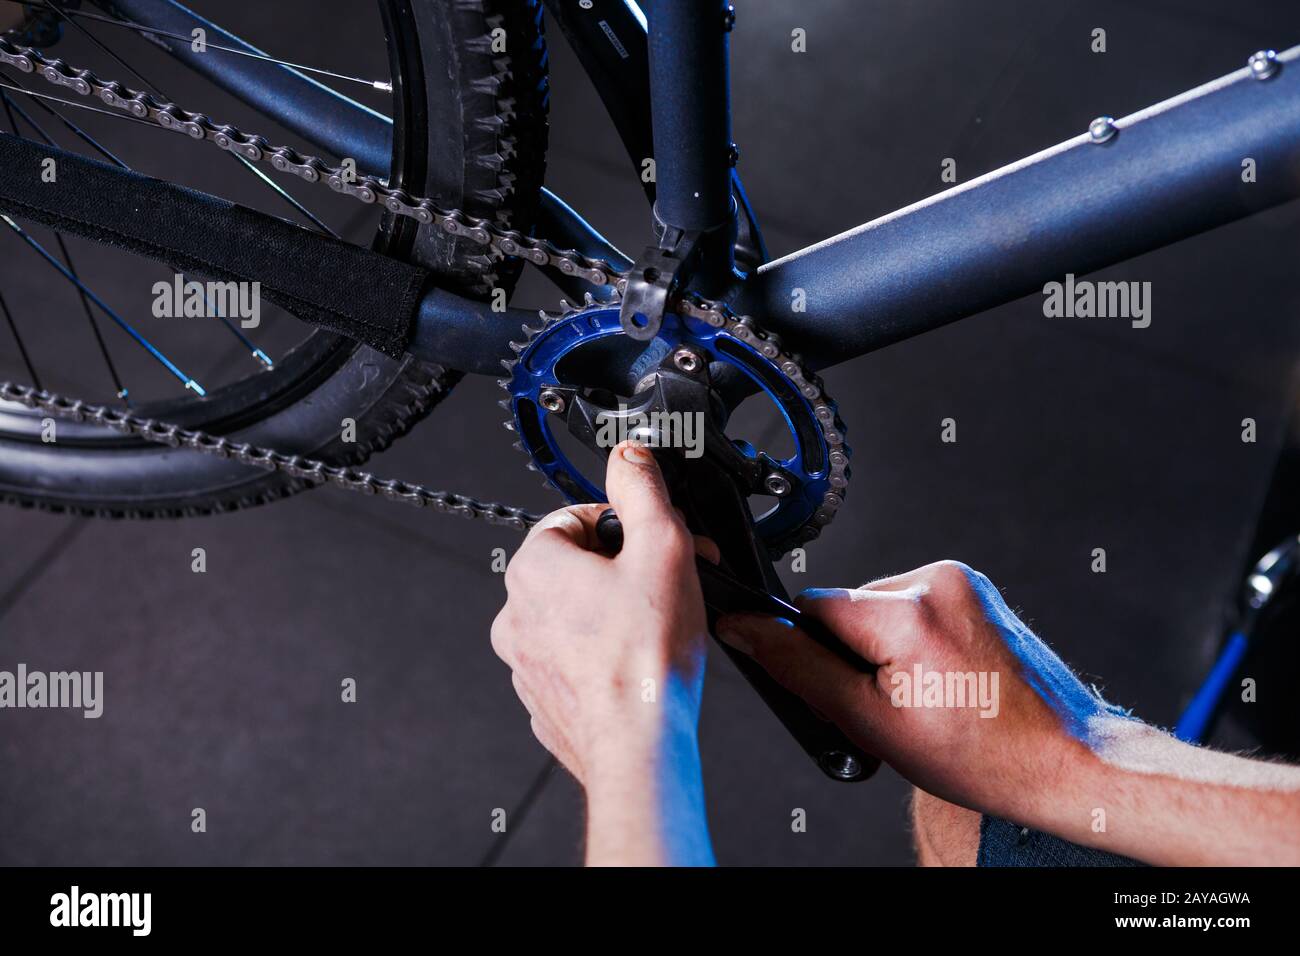 Primo piano delle mani dell'uomo la meccanica della bicicletta nel negozio usa l'istment per regolare e riparare il gruppo della pedivella della bicicletta, la cha della bicicletta Foto Stock